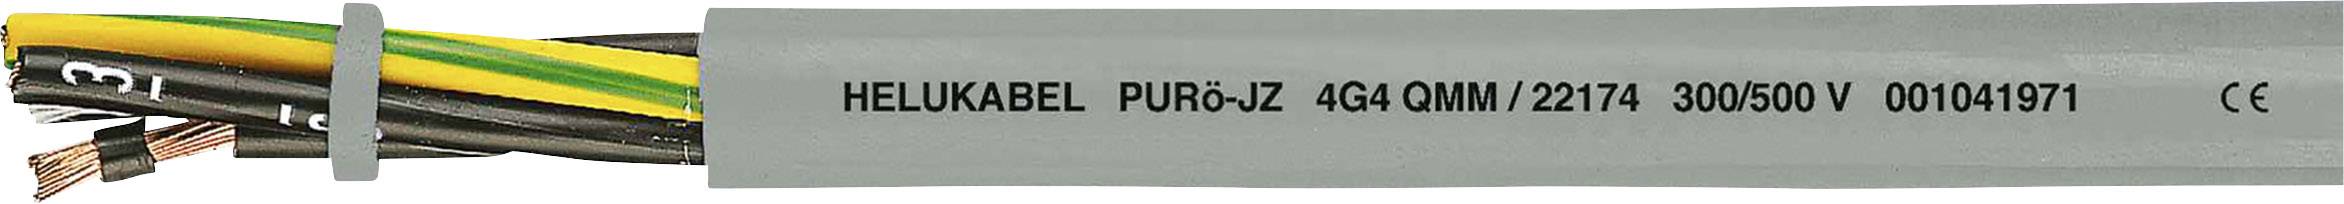 HELUKABEL PURö-JZ Steuerleitung 5 G 2.50 mm² Grau 22167-1000 1000 m